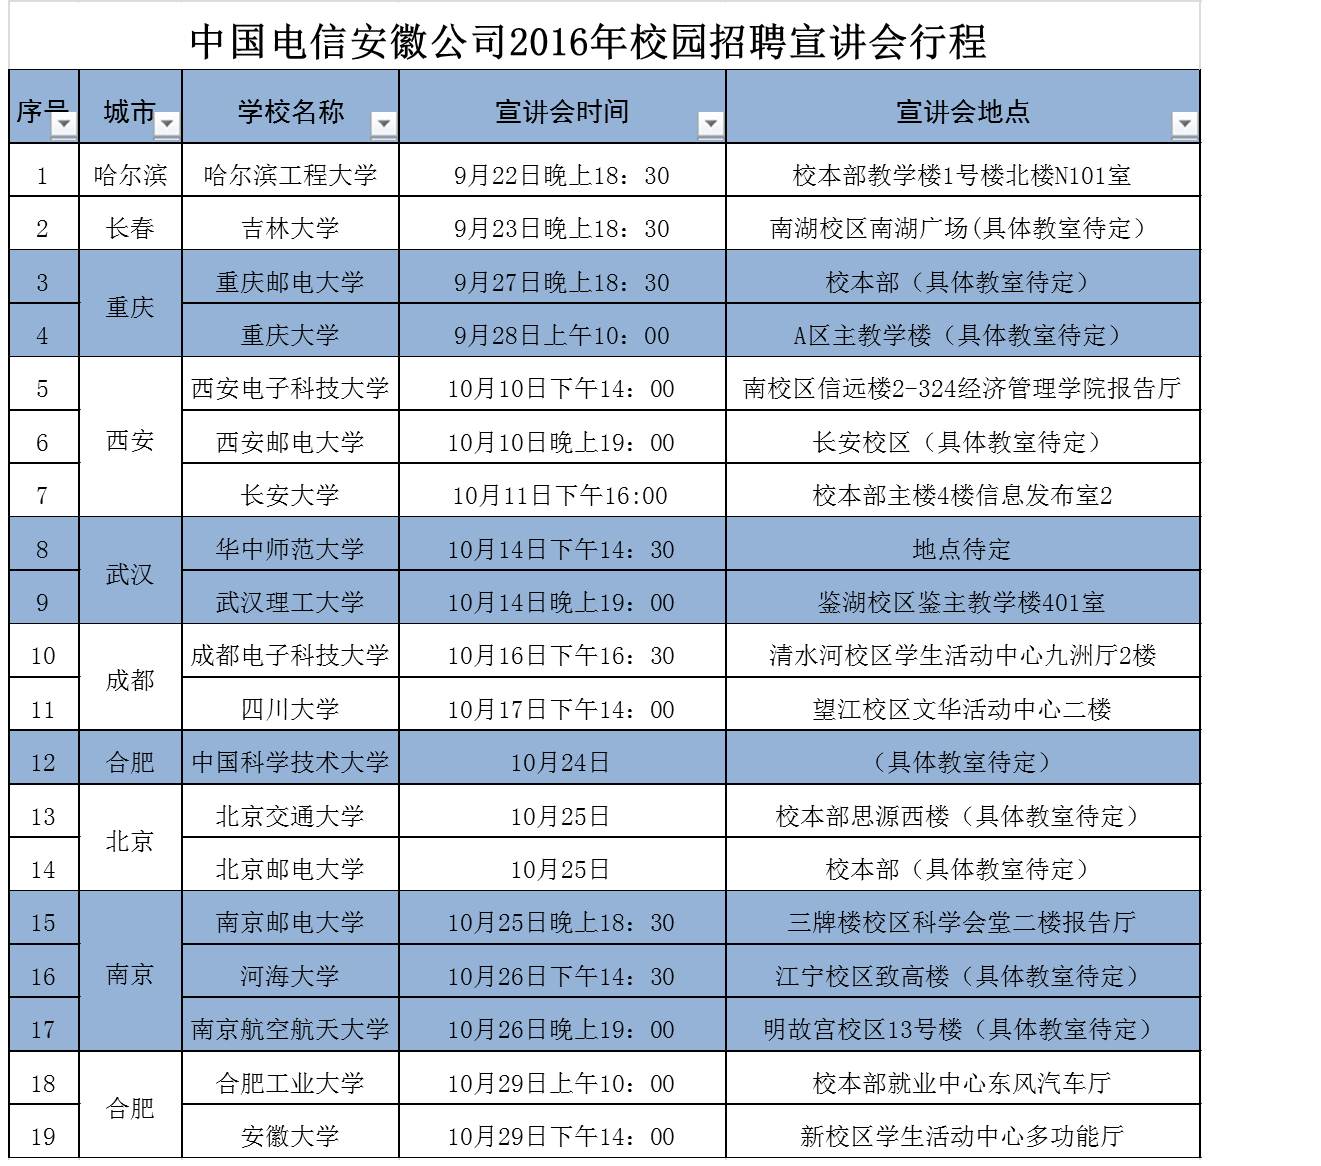 2017中国电信安徽分公司招聘157人公告